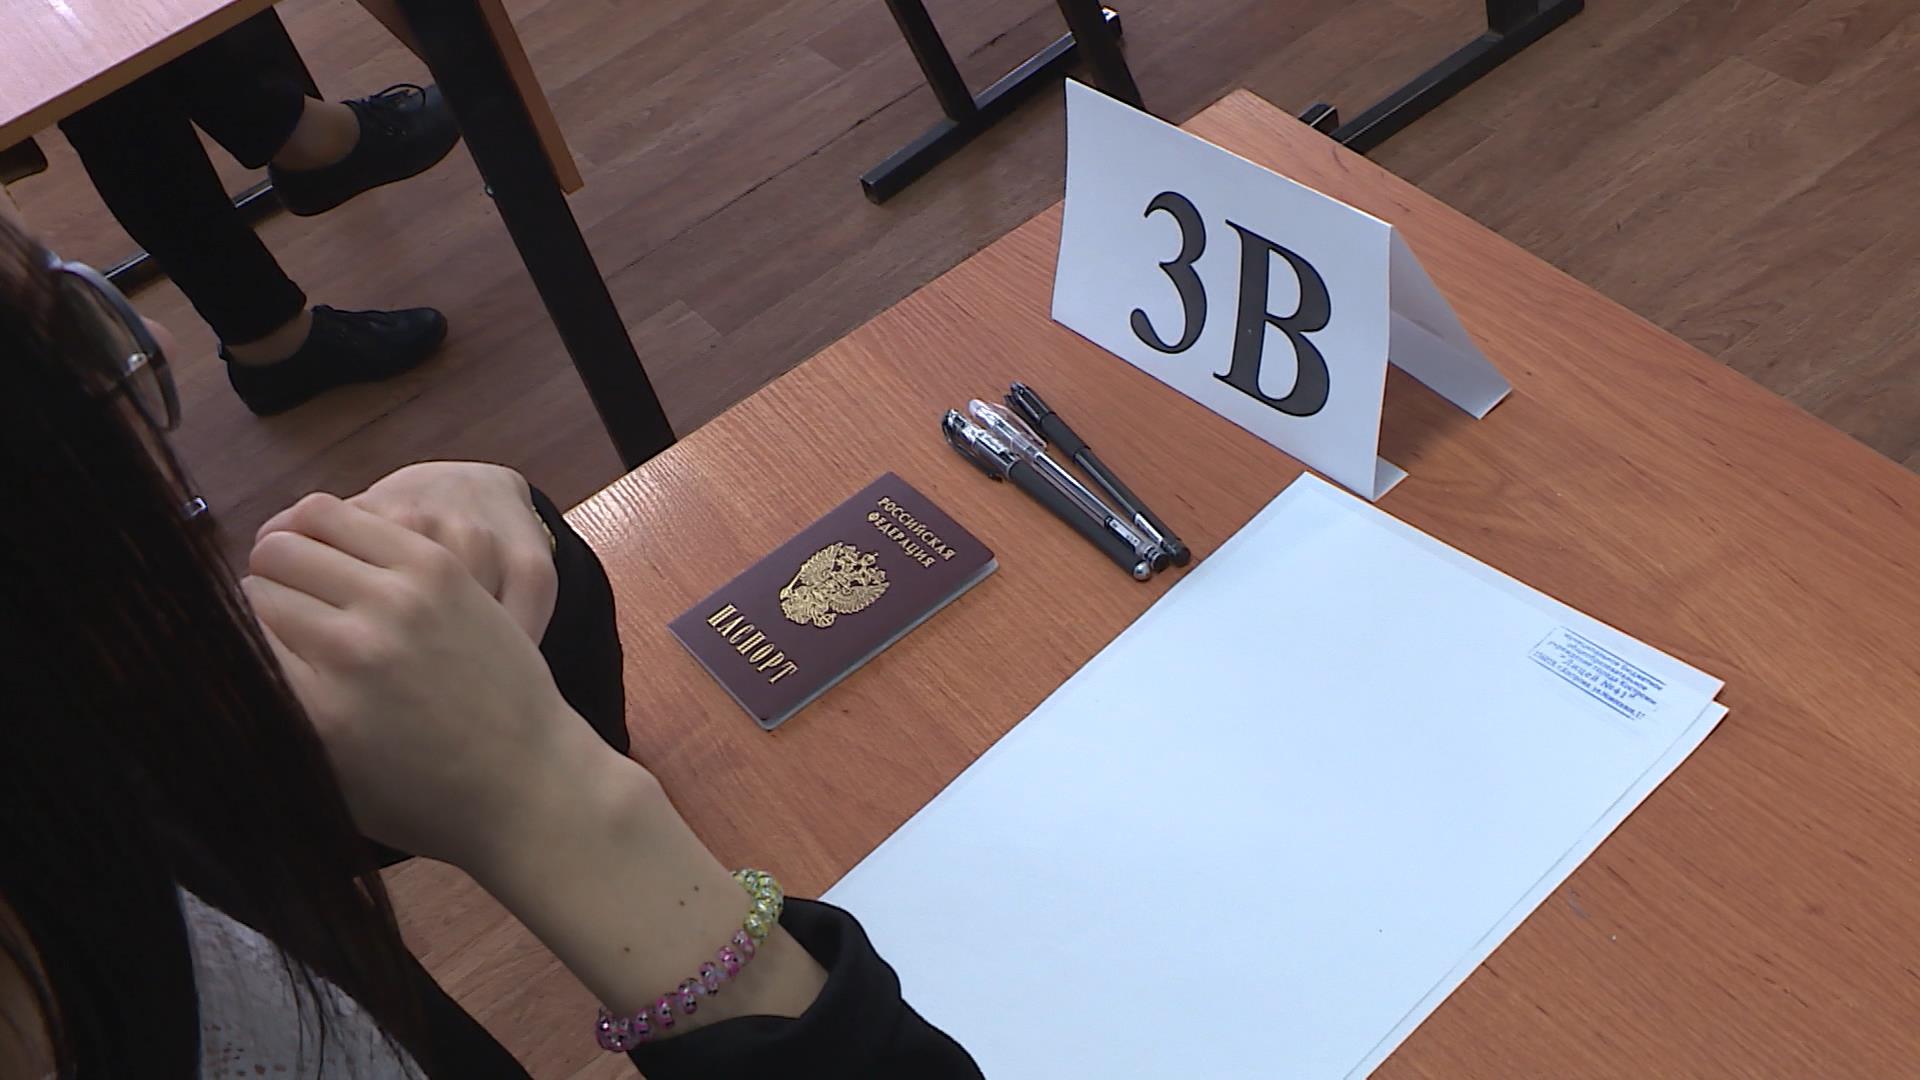 Костромским школьникам на экзаменах измерят температуру и обработают руки